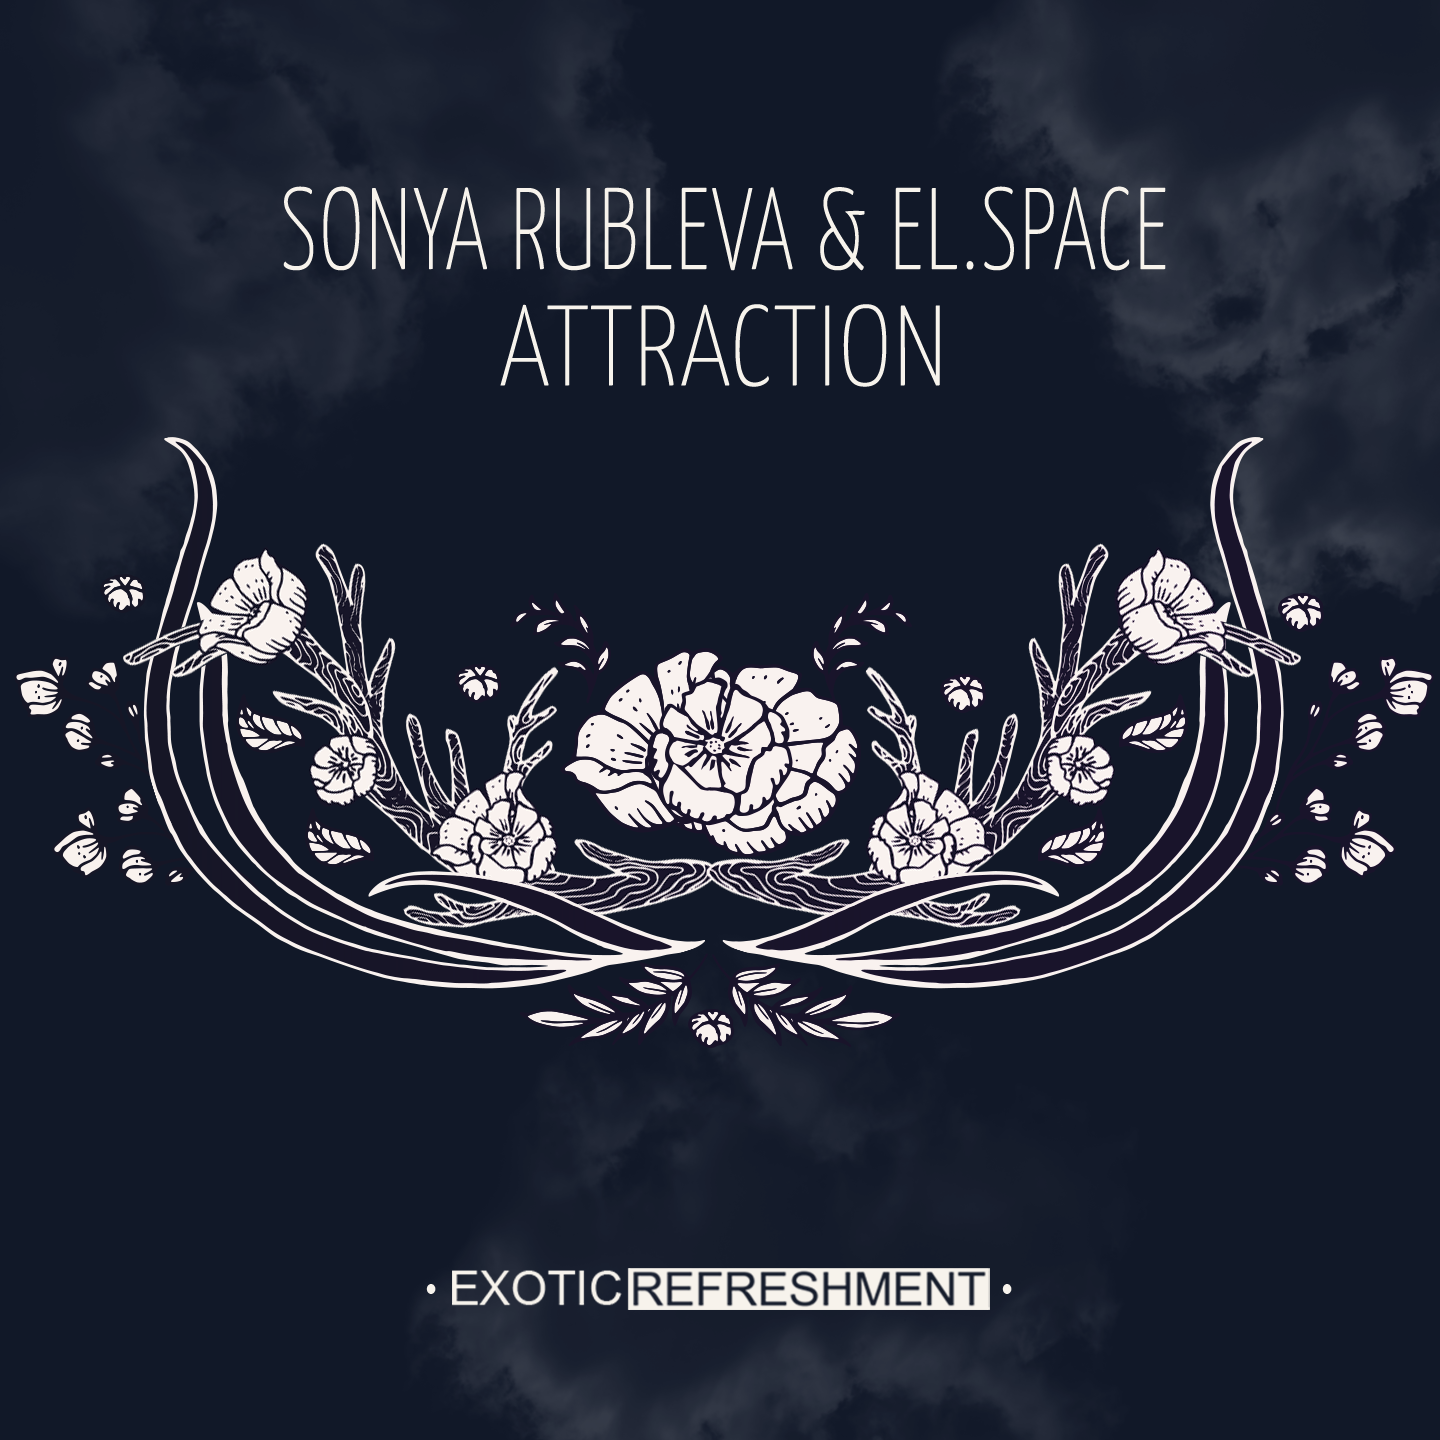 Sonya Rubleva & el.space - Attraction